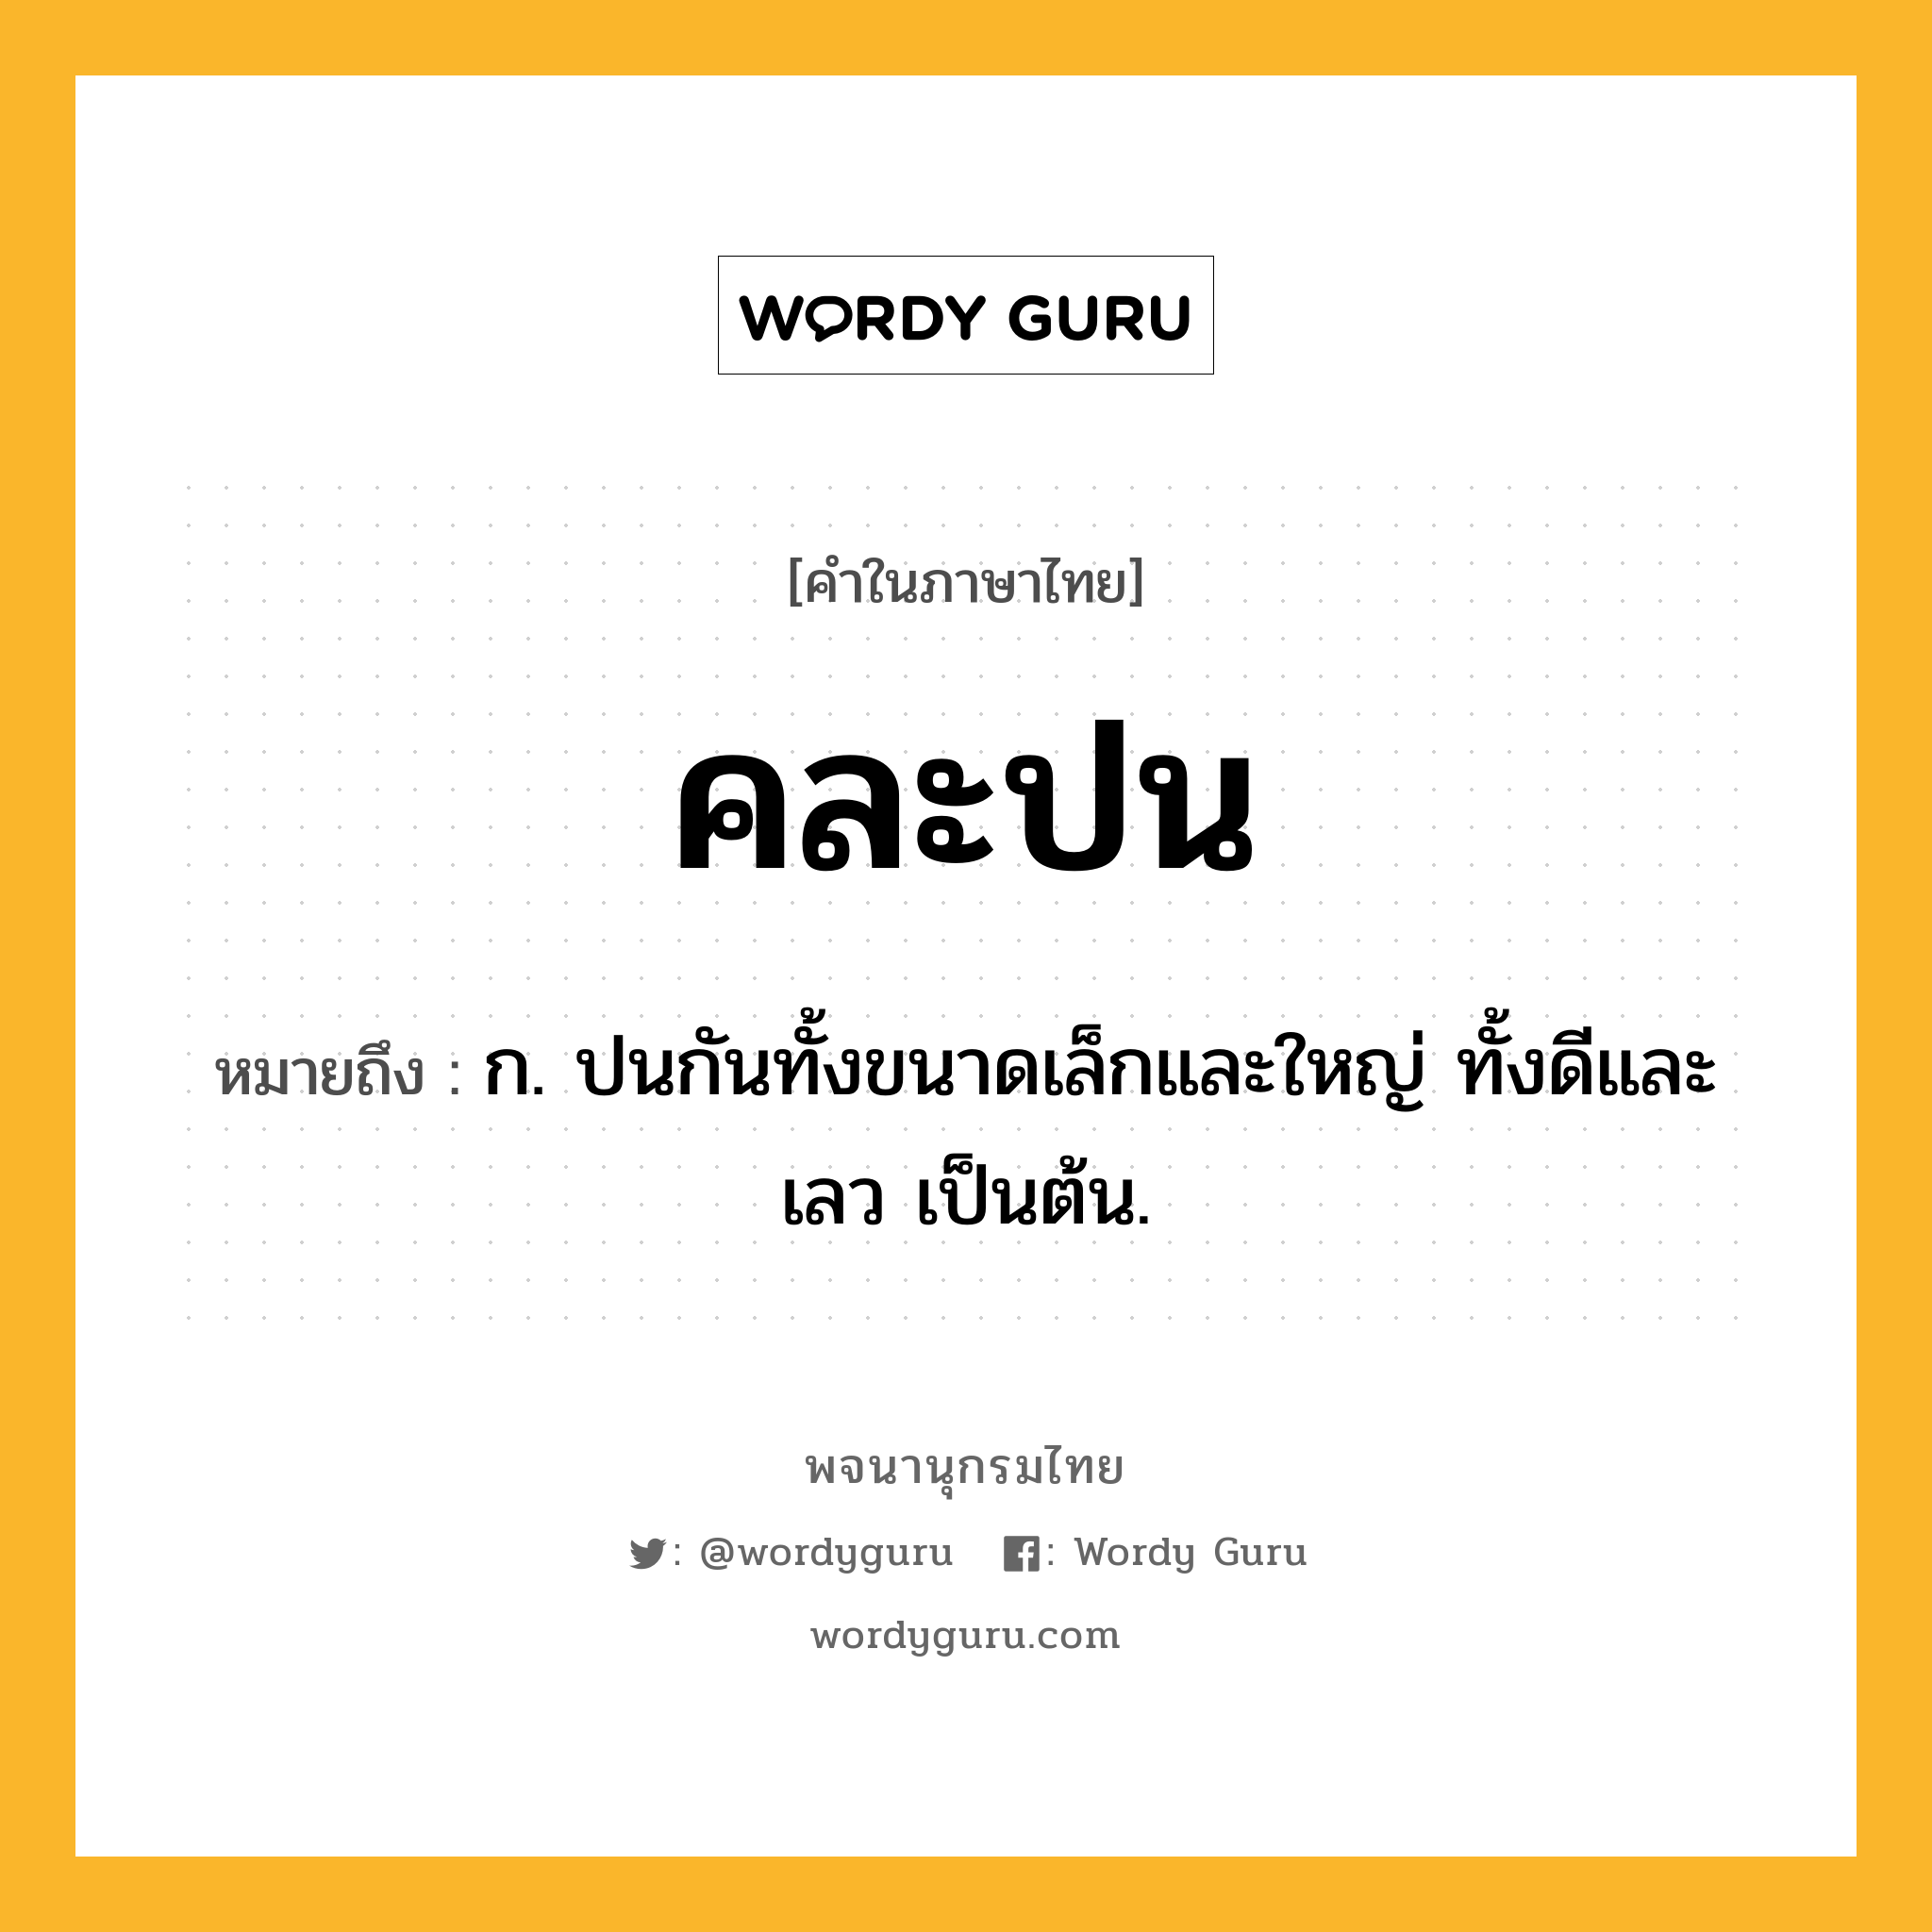 คละปน หมายถึงอะไร?, คำในภาษาไทย คละปน หมายถึง ก. ปนกันทั้งขนาดเล็กและใหญ่ ทั้งดีและเลว เป็นต้น.